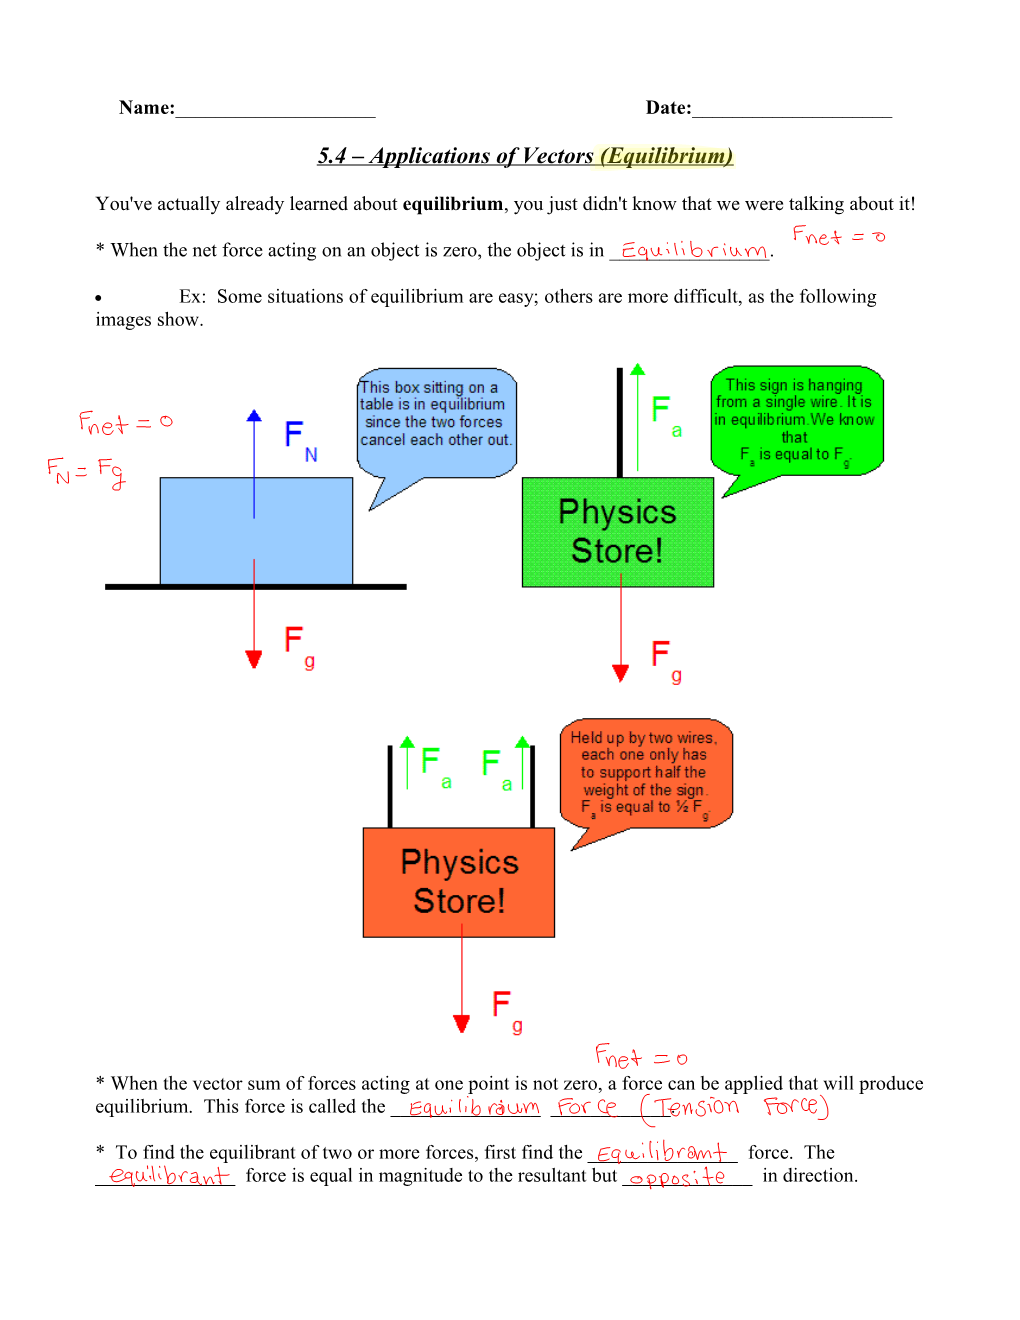 5.4 Applications of Vectors (Equilibrium)